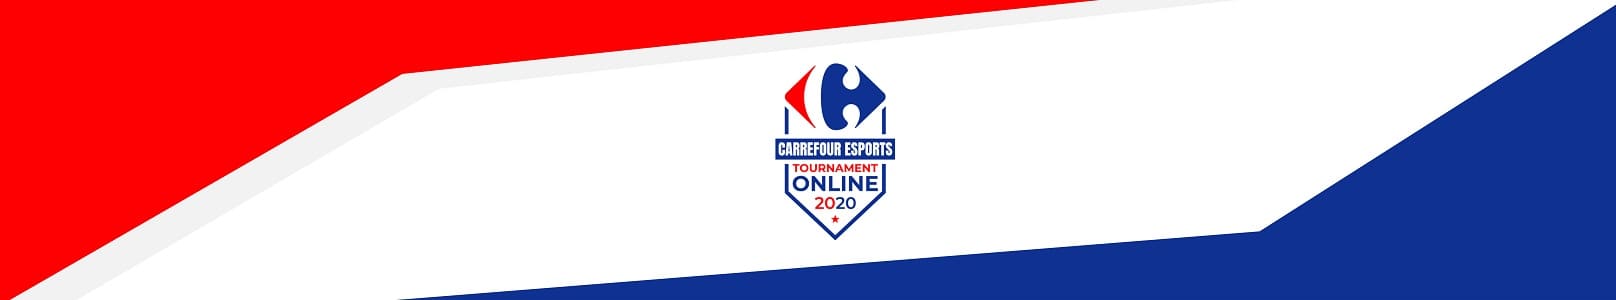 Vuelve Carrefour Esports Tournament 2020 con una edición online de sus competiciones